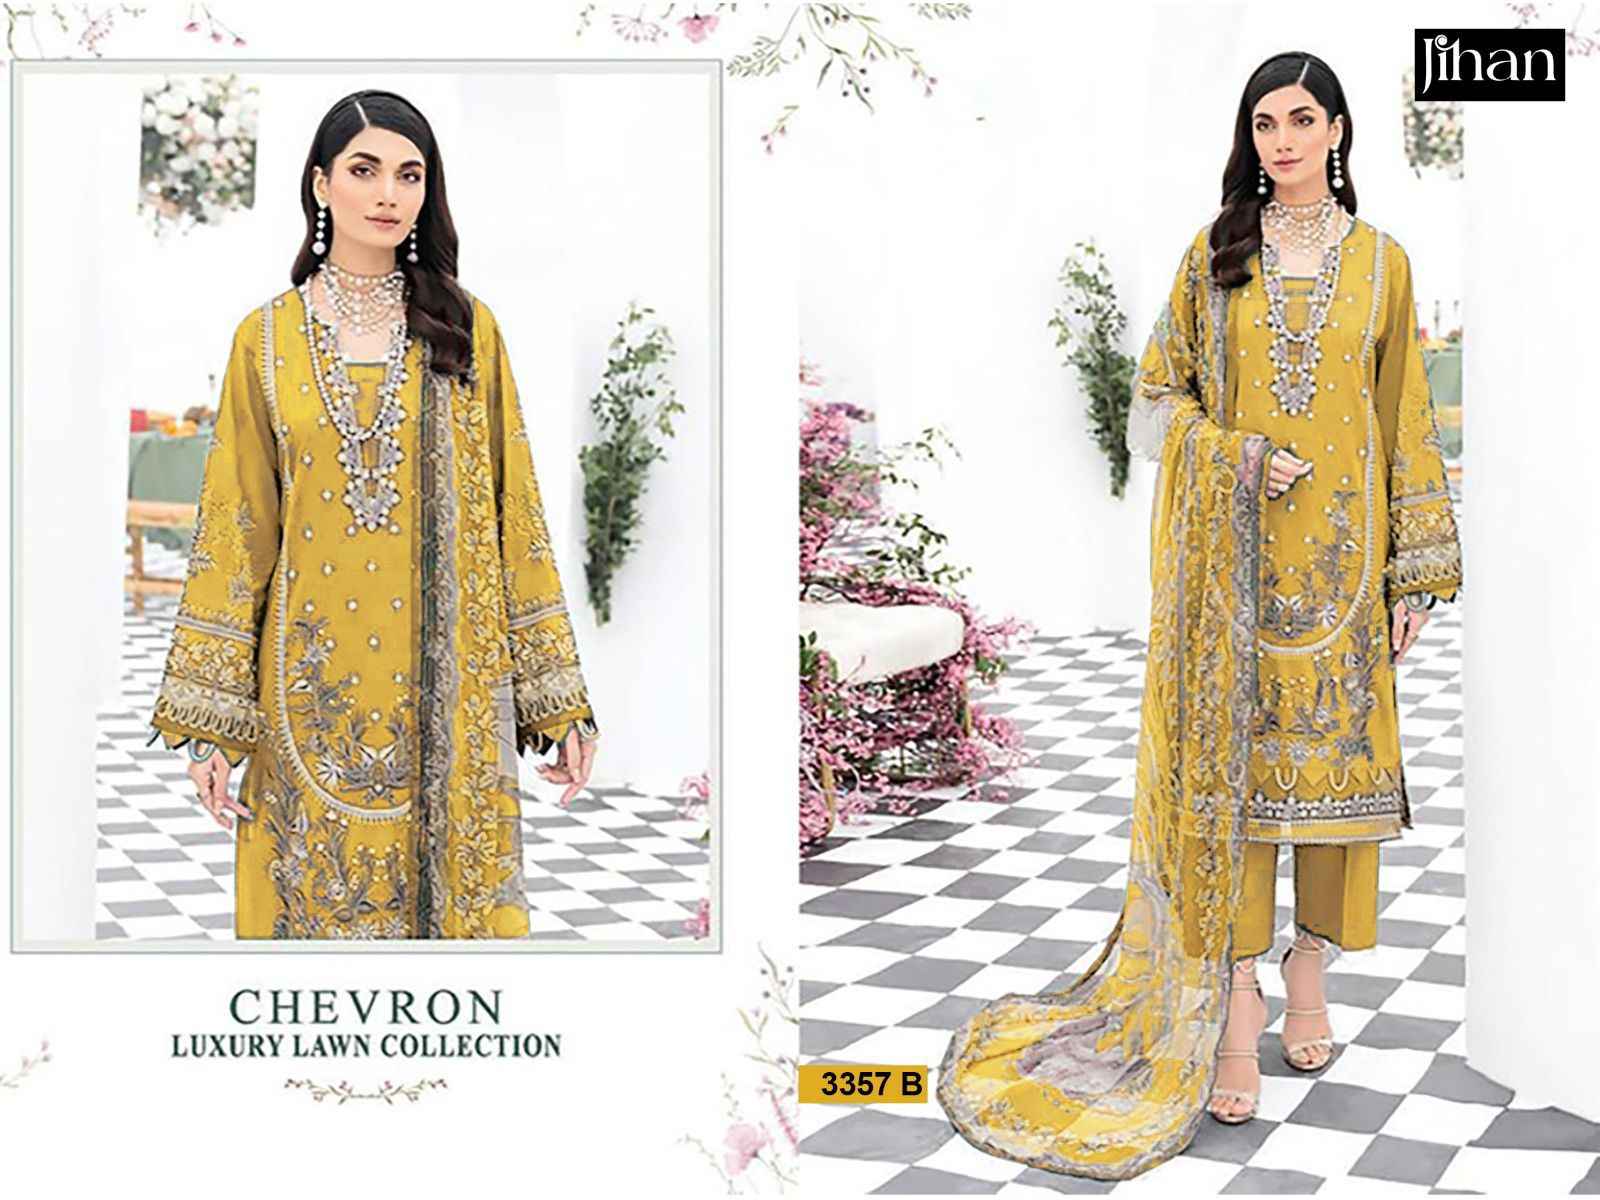 Jihan Chevron Luxury Lawn Collection Lawn Cotton Dress Material (3 pcs Catalogue)